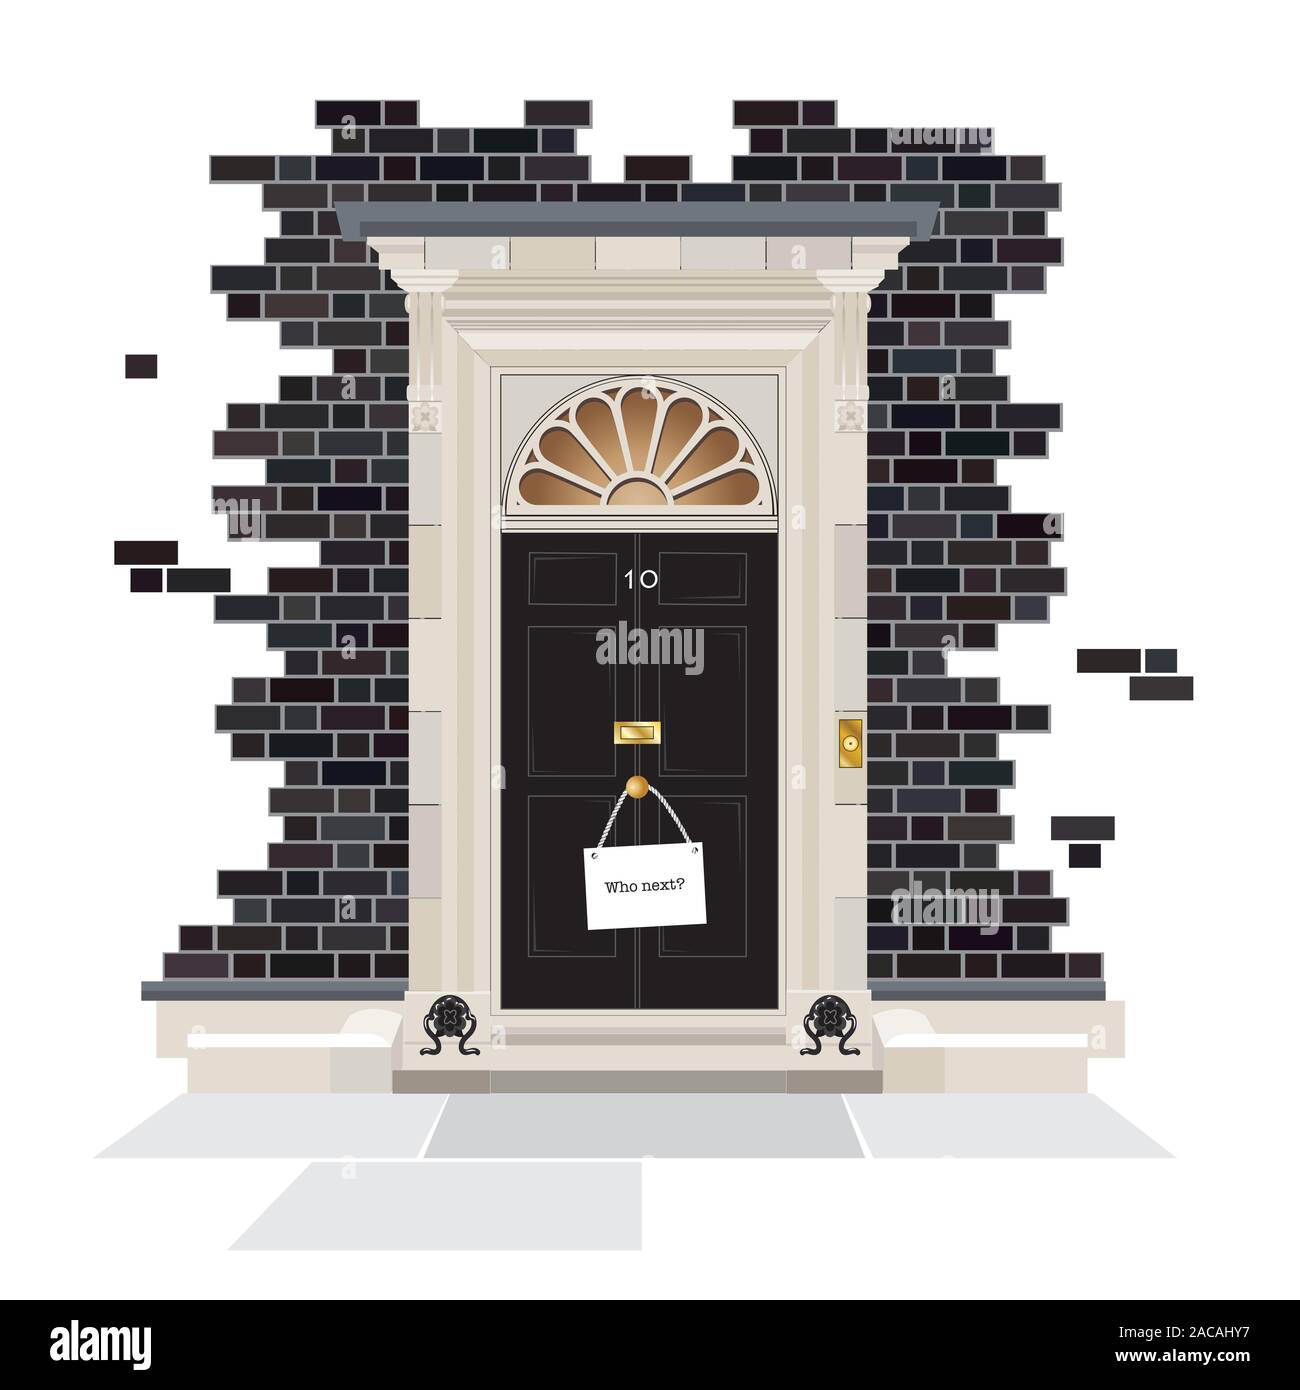 Das Äußere der Nummer 10 Downing Street. Die offizielle Residenz des britischen Premierminister seit 1735, mit Schild an der Tür Knopf fragt, wer dann? Stock Vektor